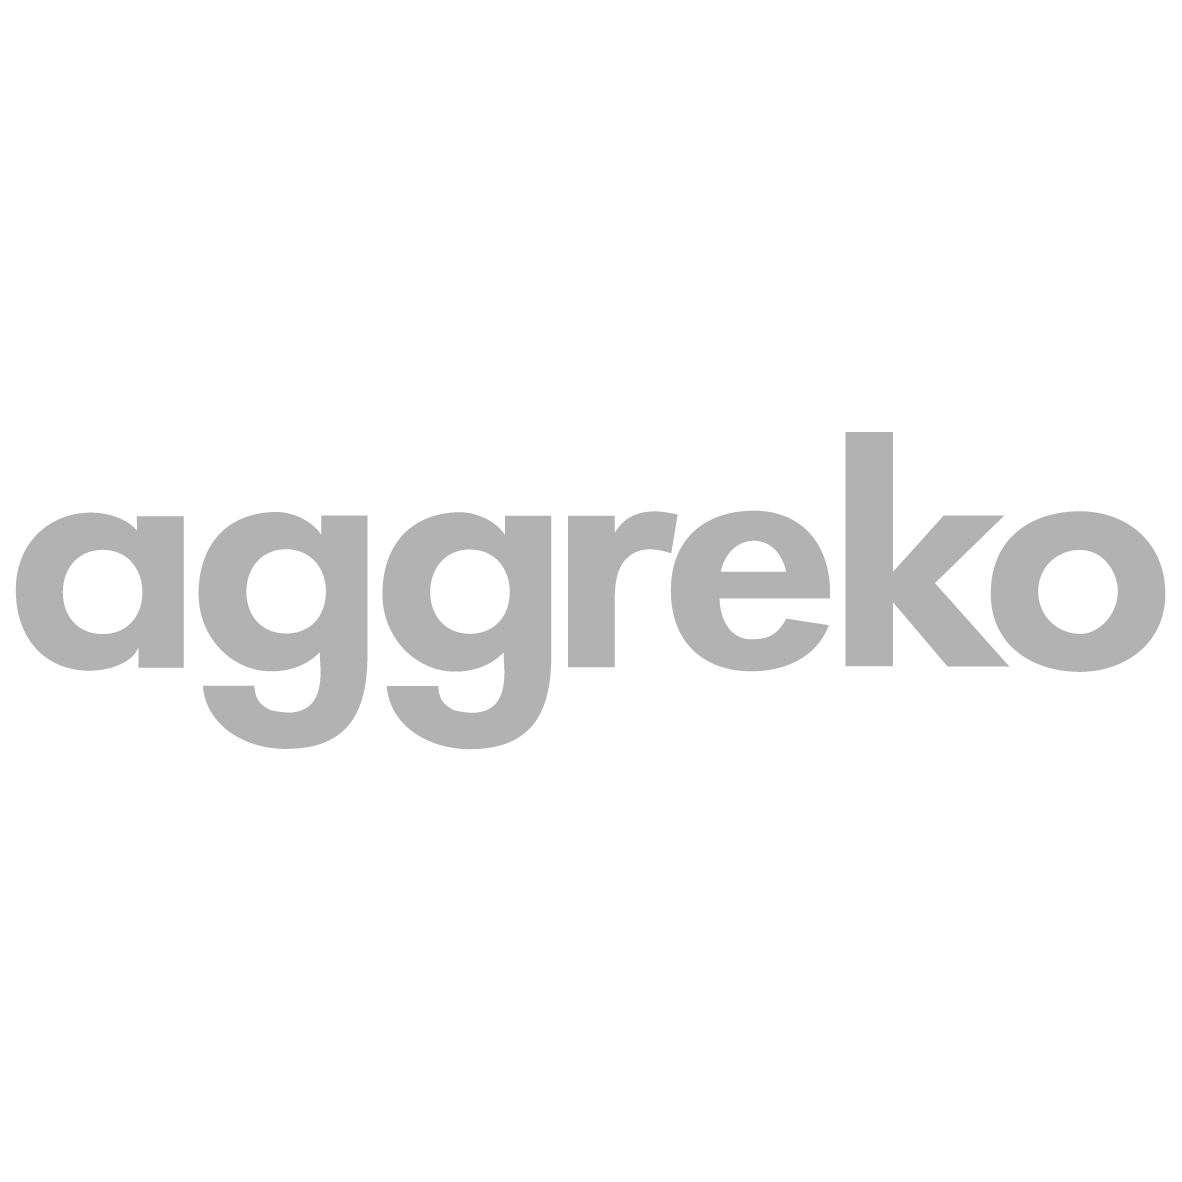 Aggreko-01.png